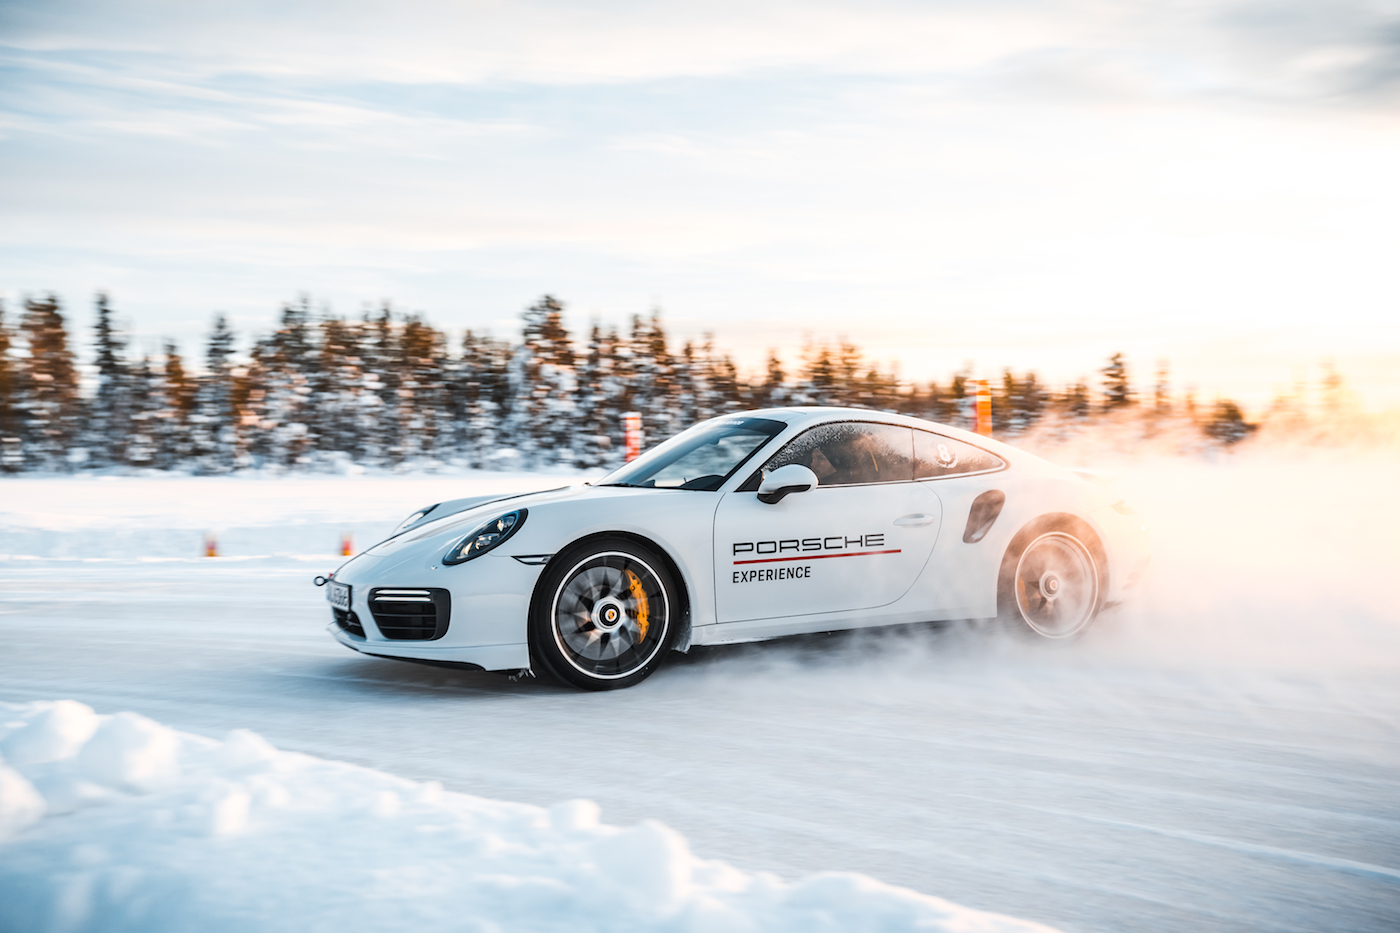 30 Jahre Allrad: Die Porsche Ice Experience 2018 1